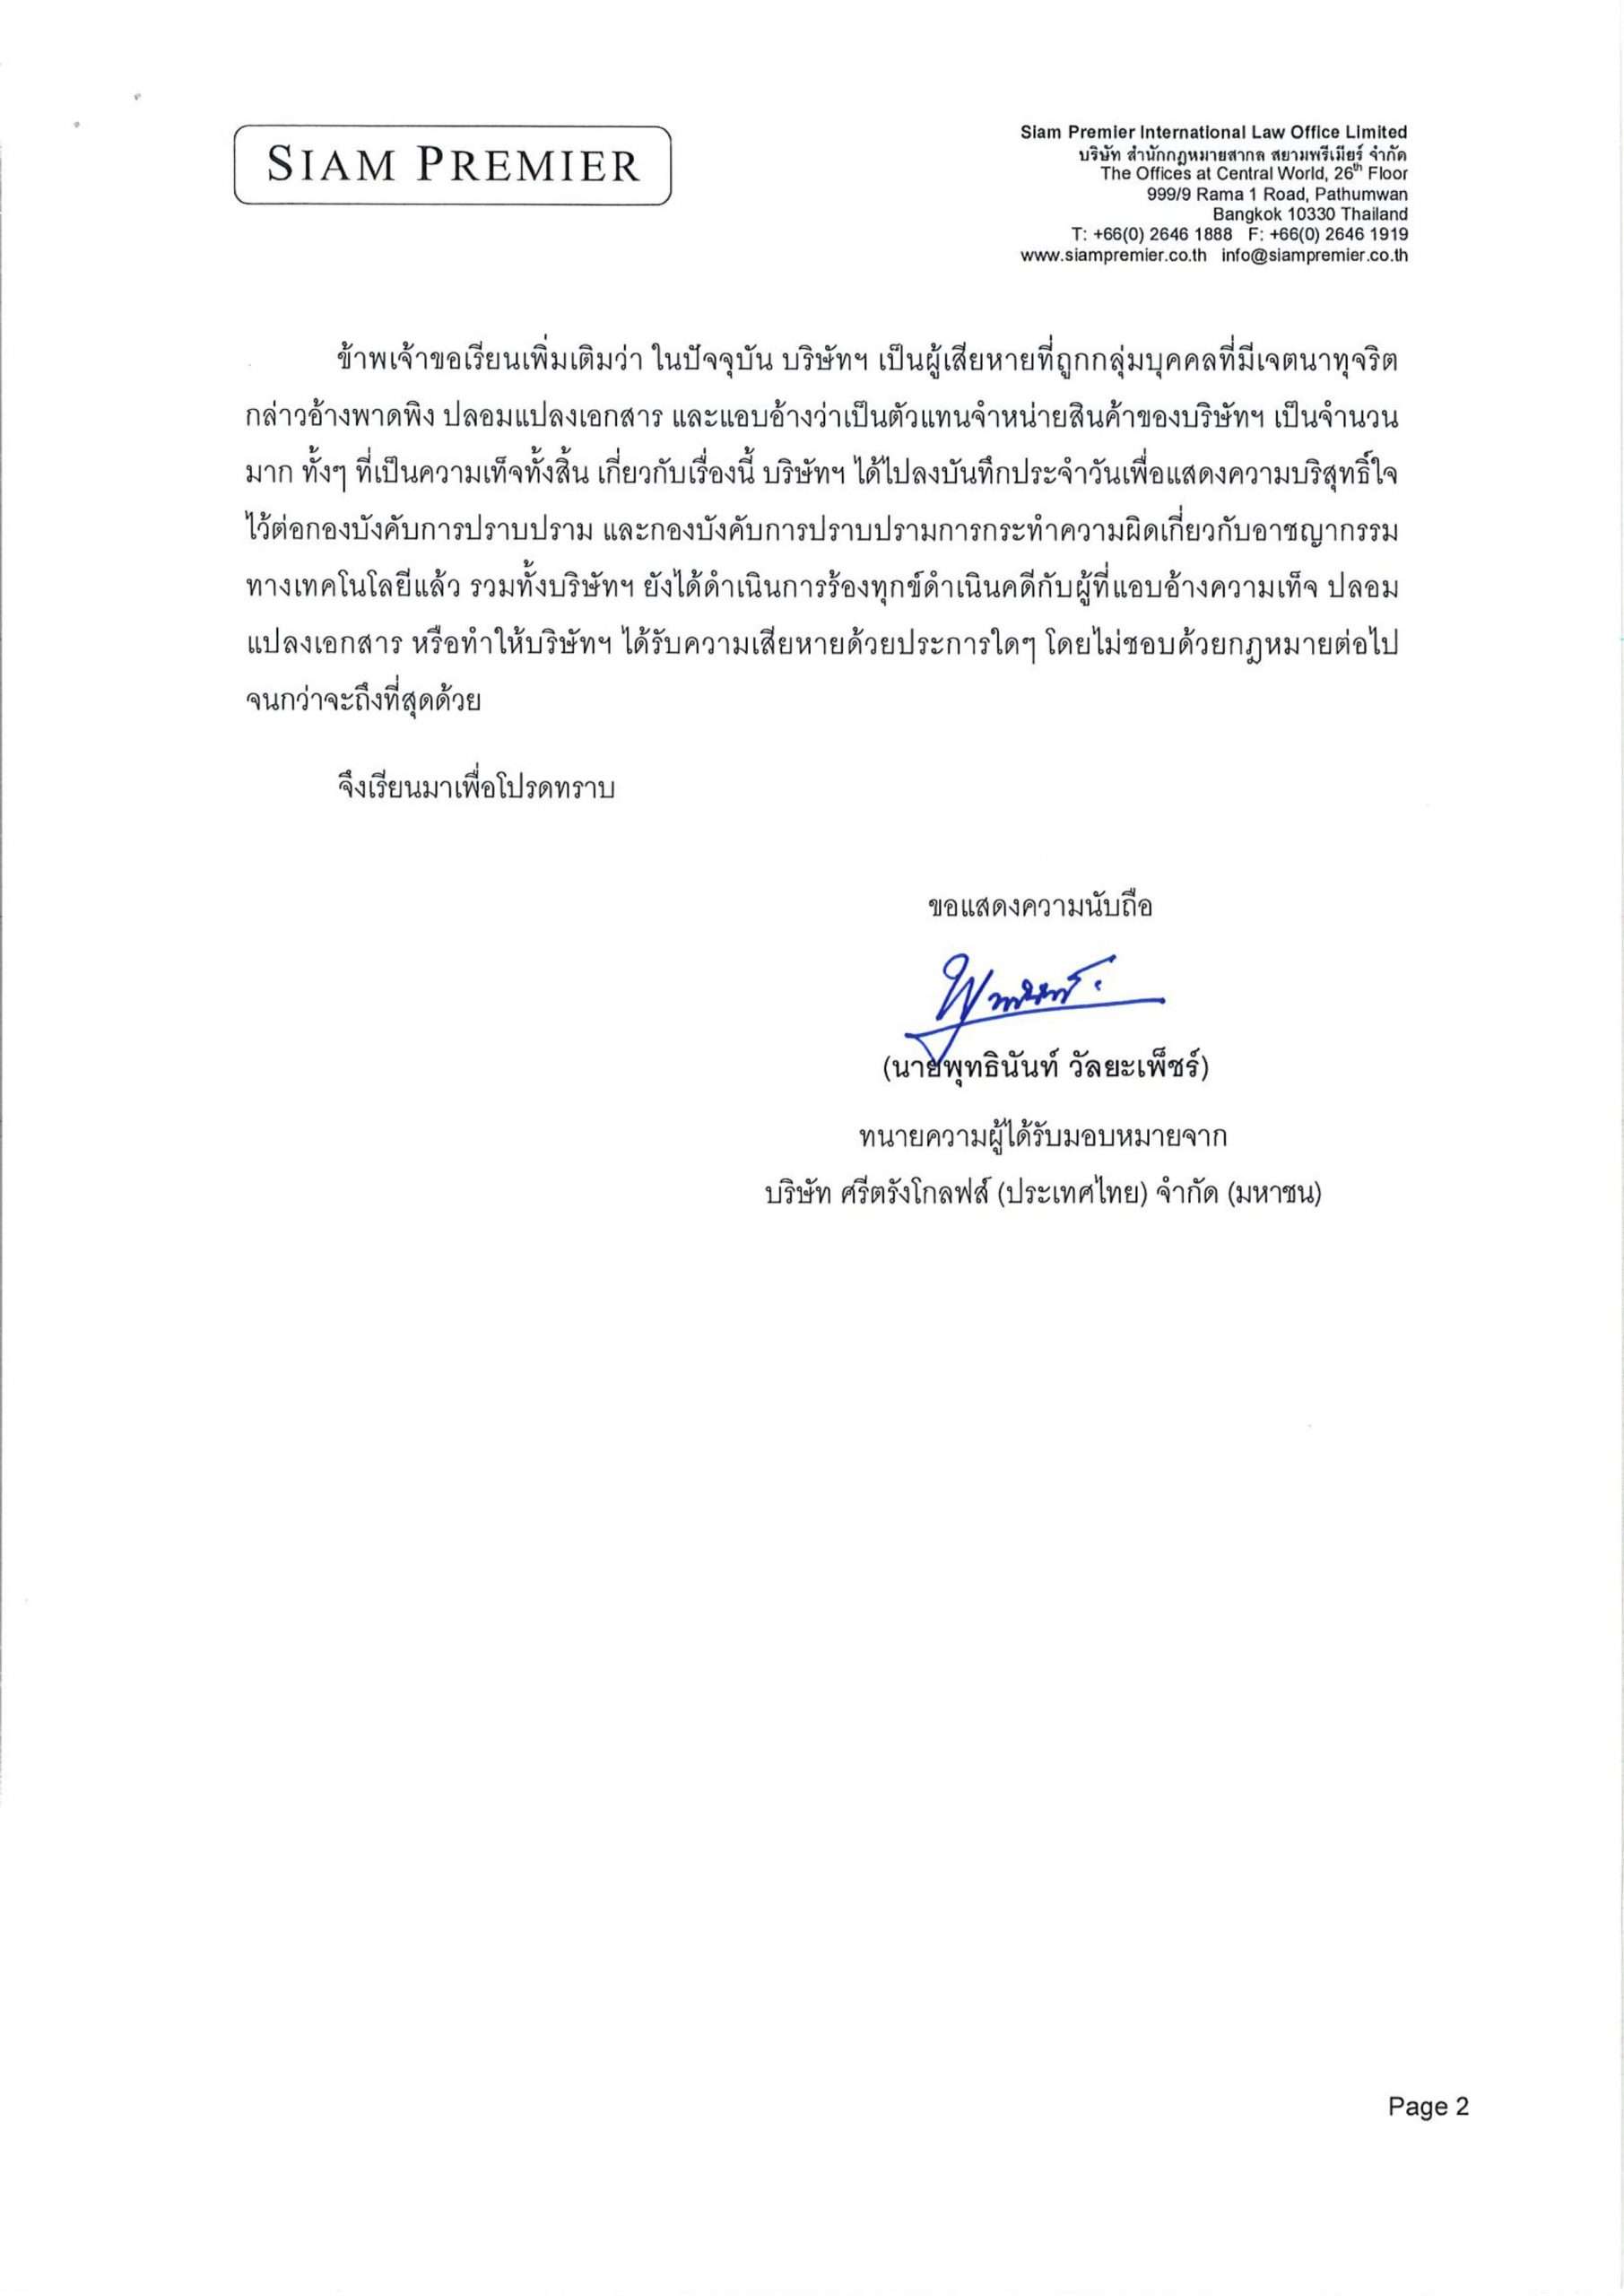 Louis Ziskin Thailand Events Drop In, Inc. Board of Directors Statement